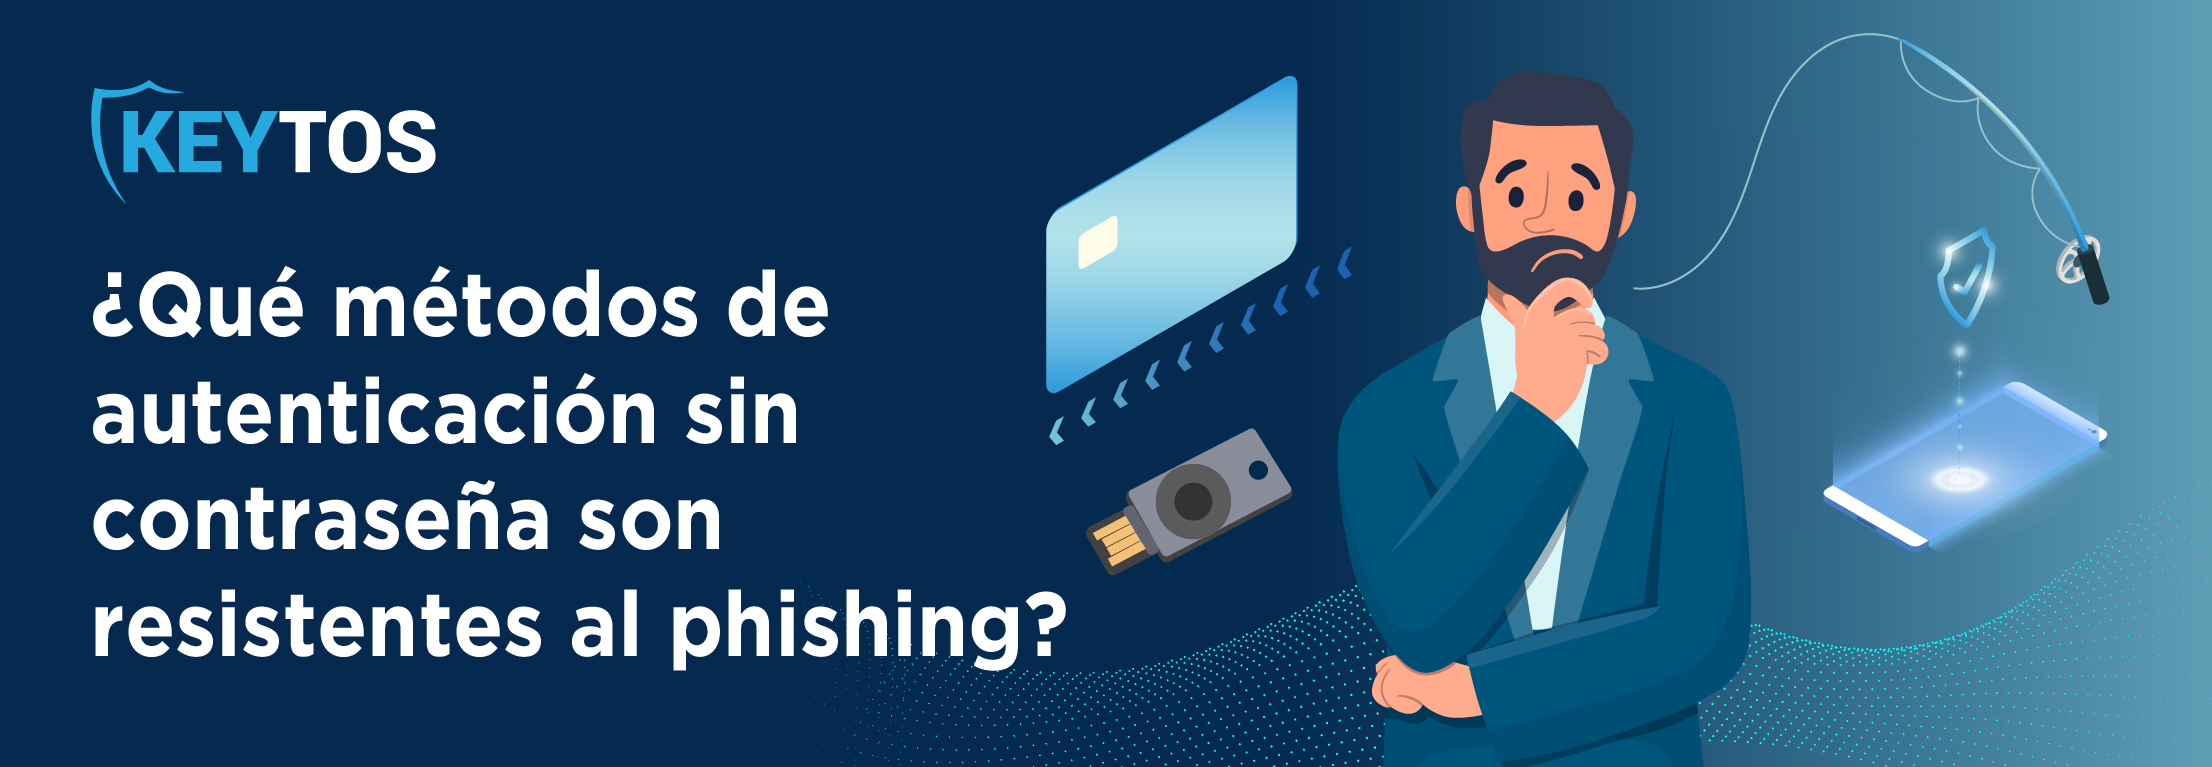 Que métodos de autenticación son resistentes al phishing? FIDO2 y smartcard son los ganadores.